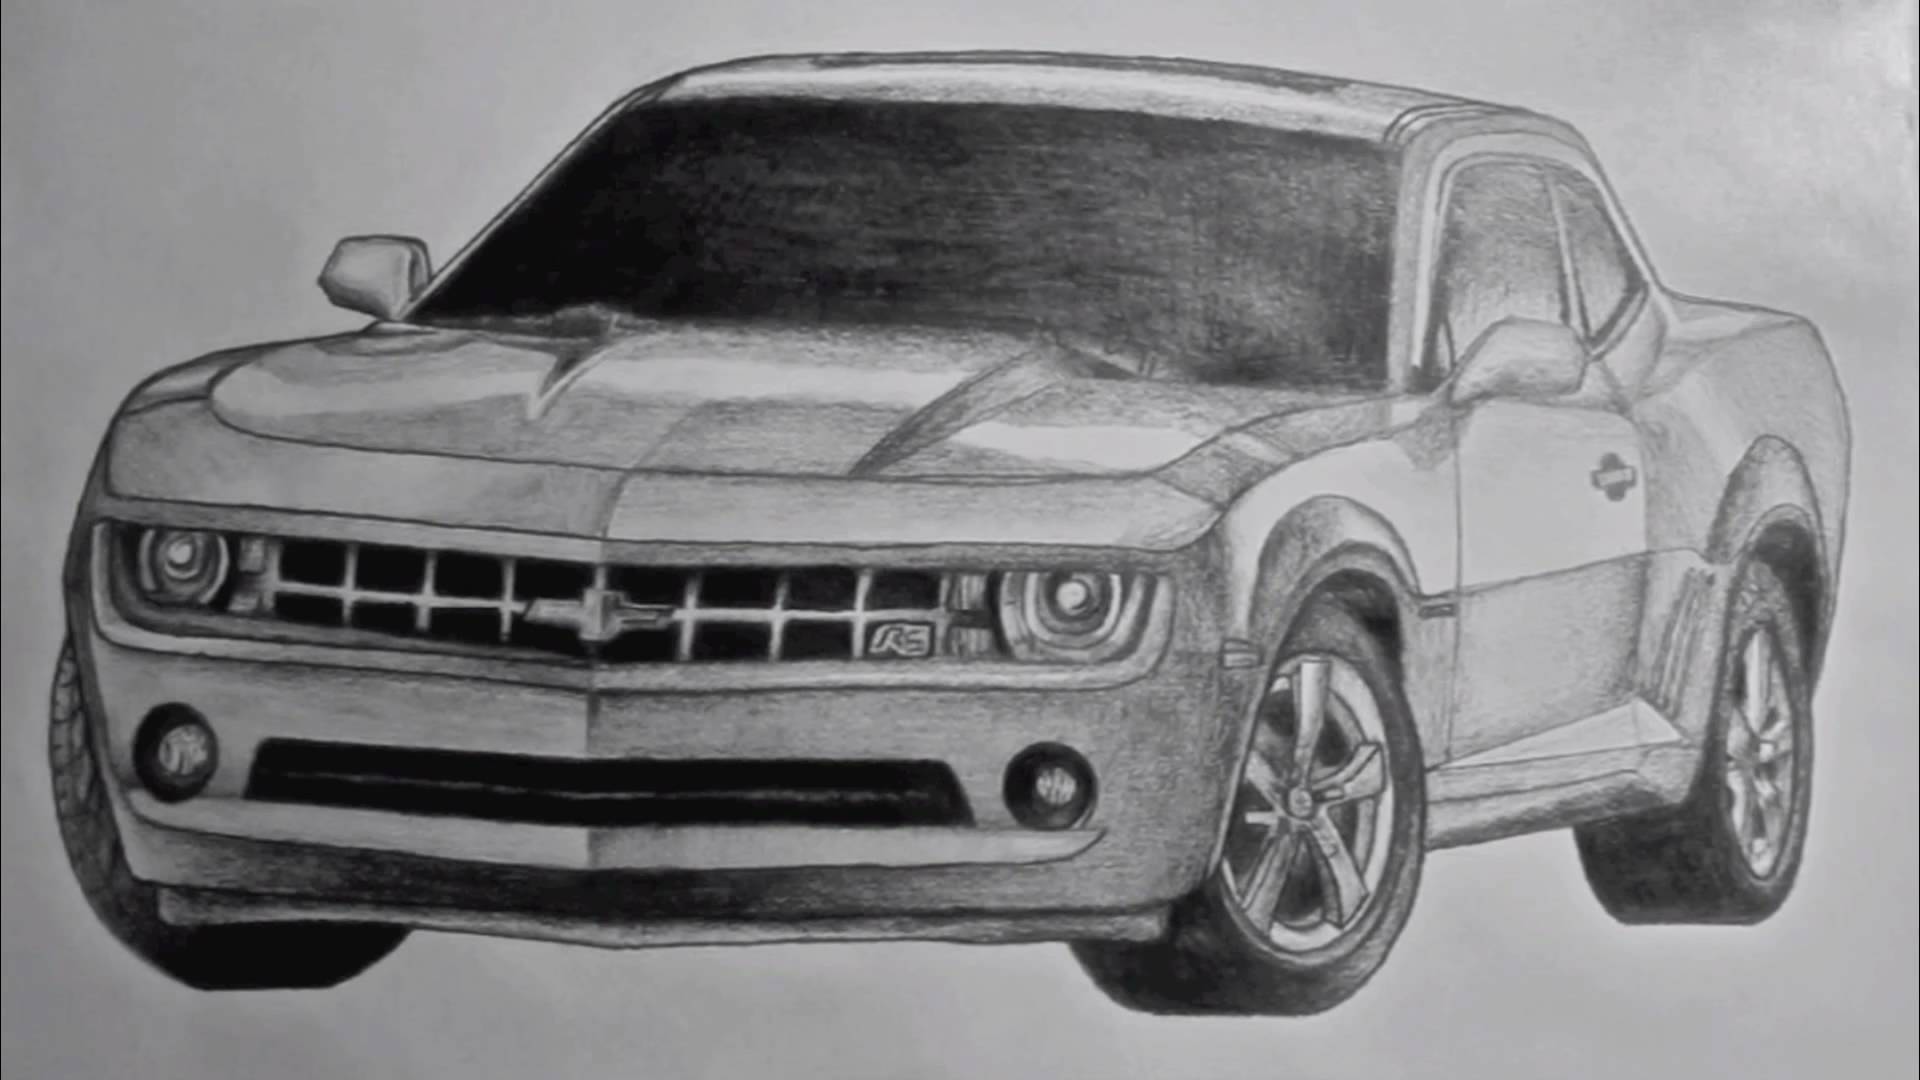 2011 Chevy Camaro Drawing - 69 Camaro Sketch. 